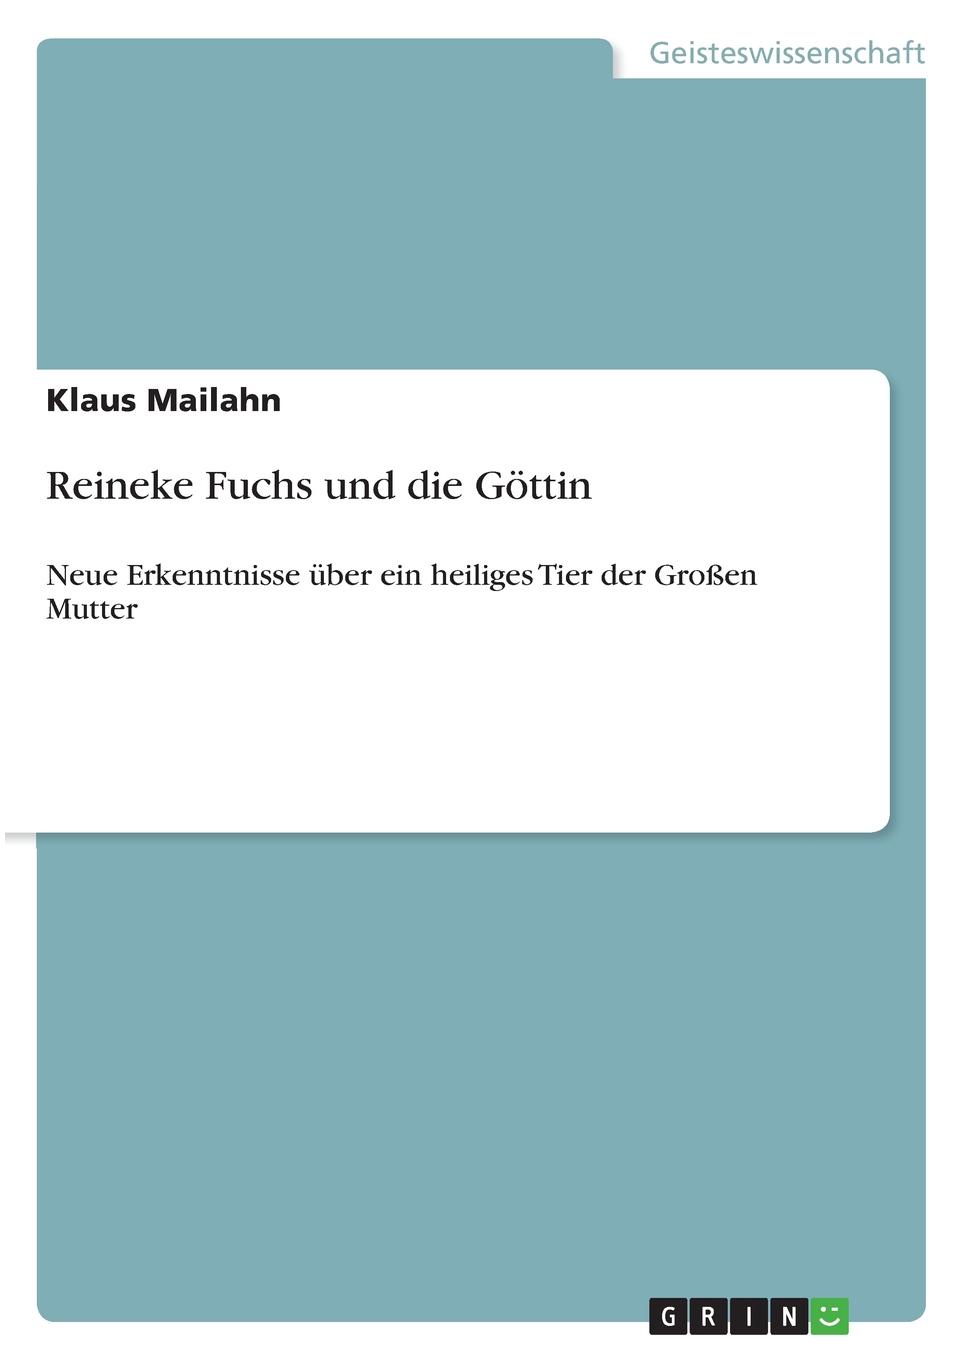 Klaus Mailahn Reineke Fuchs und die Gottin